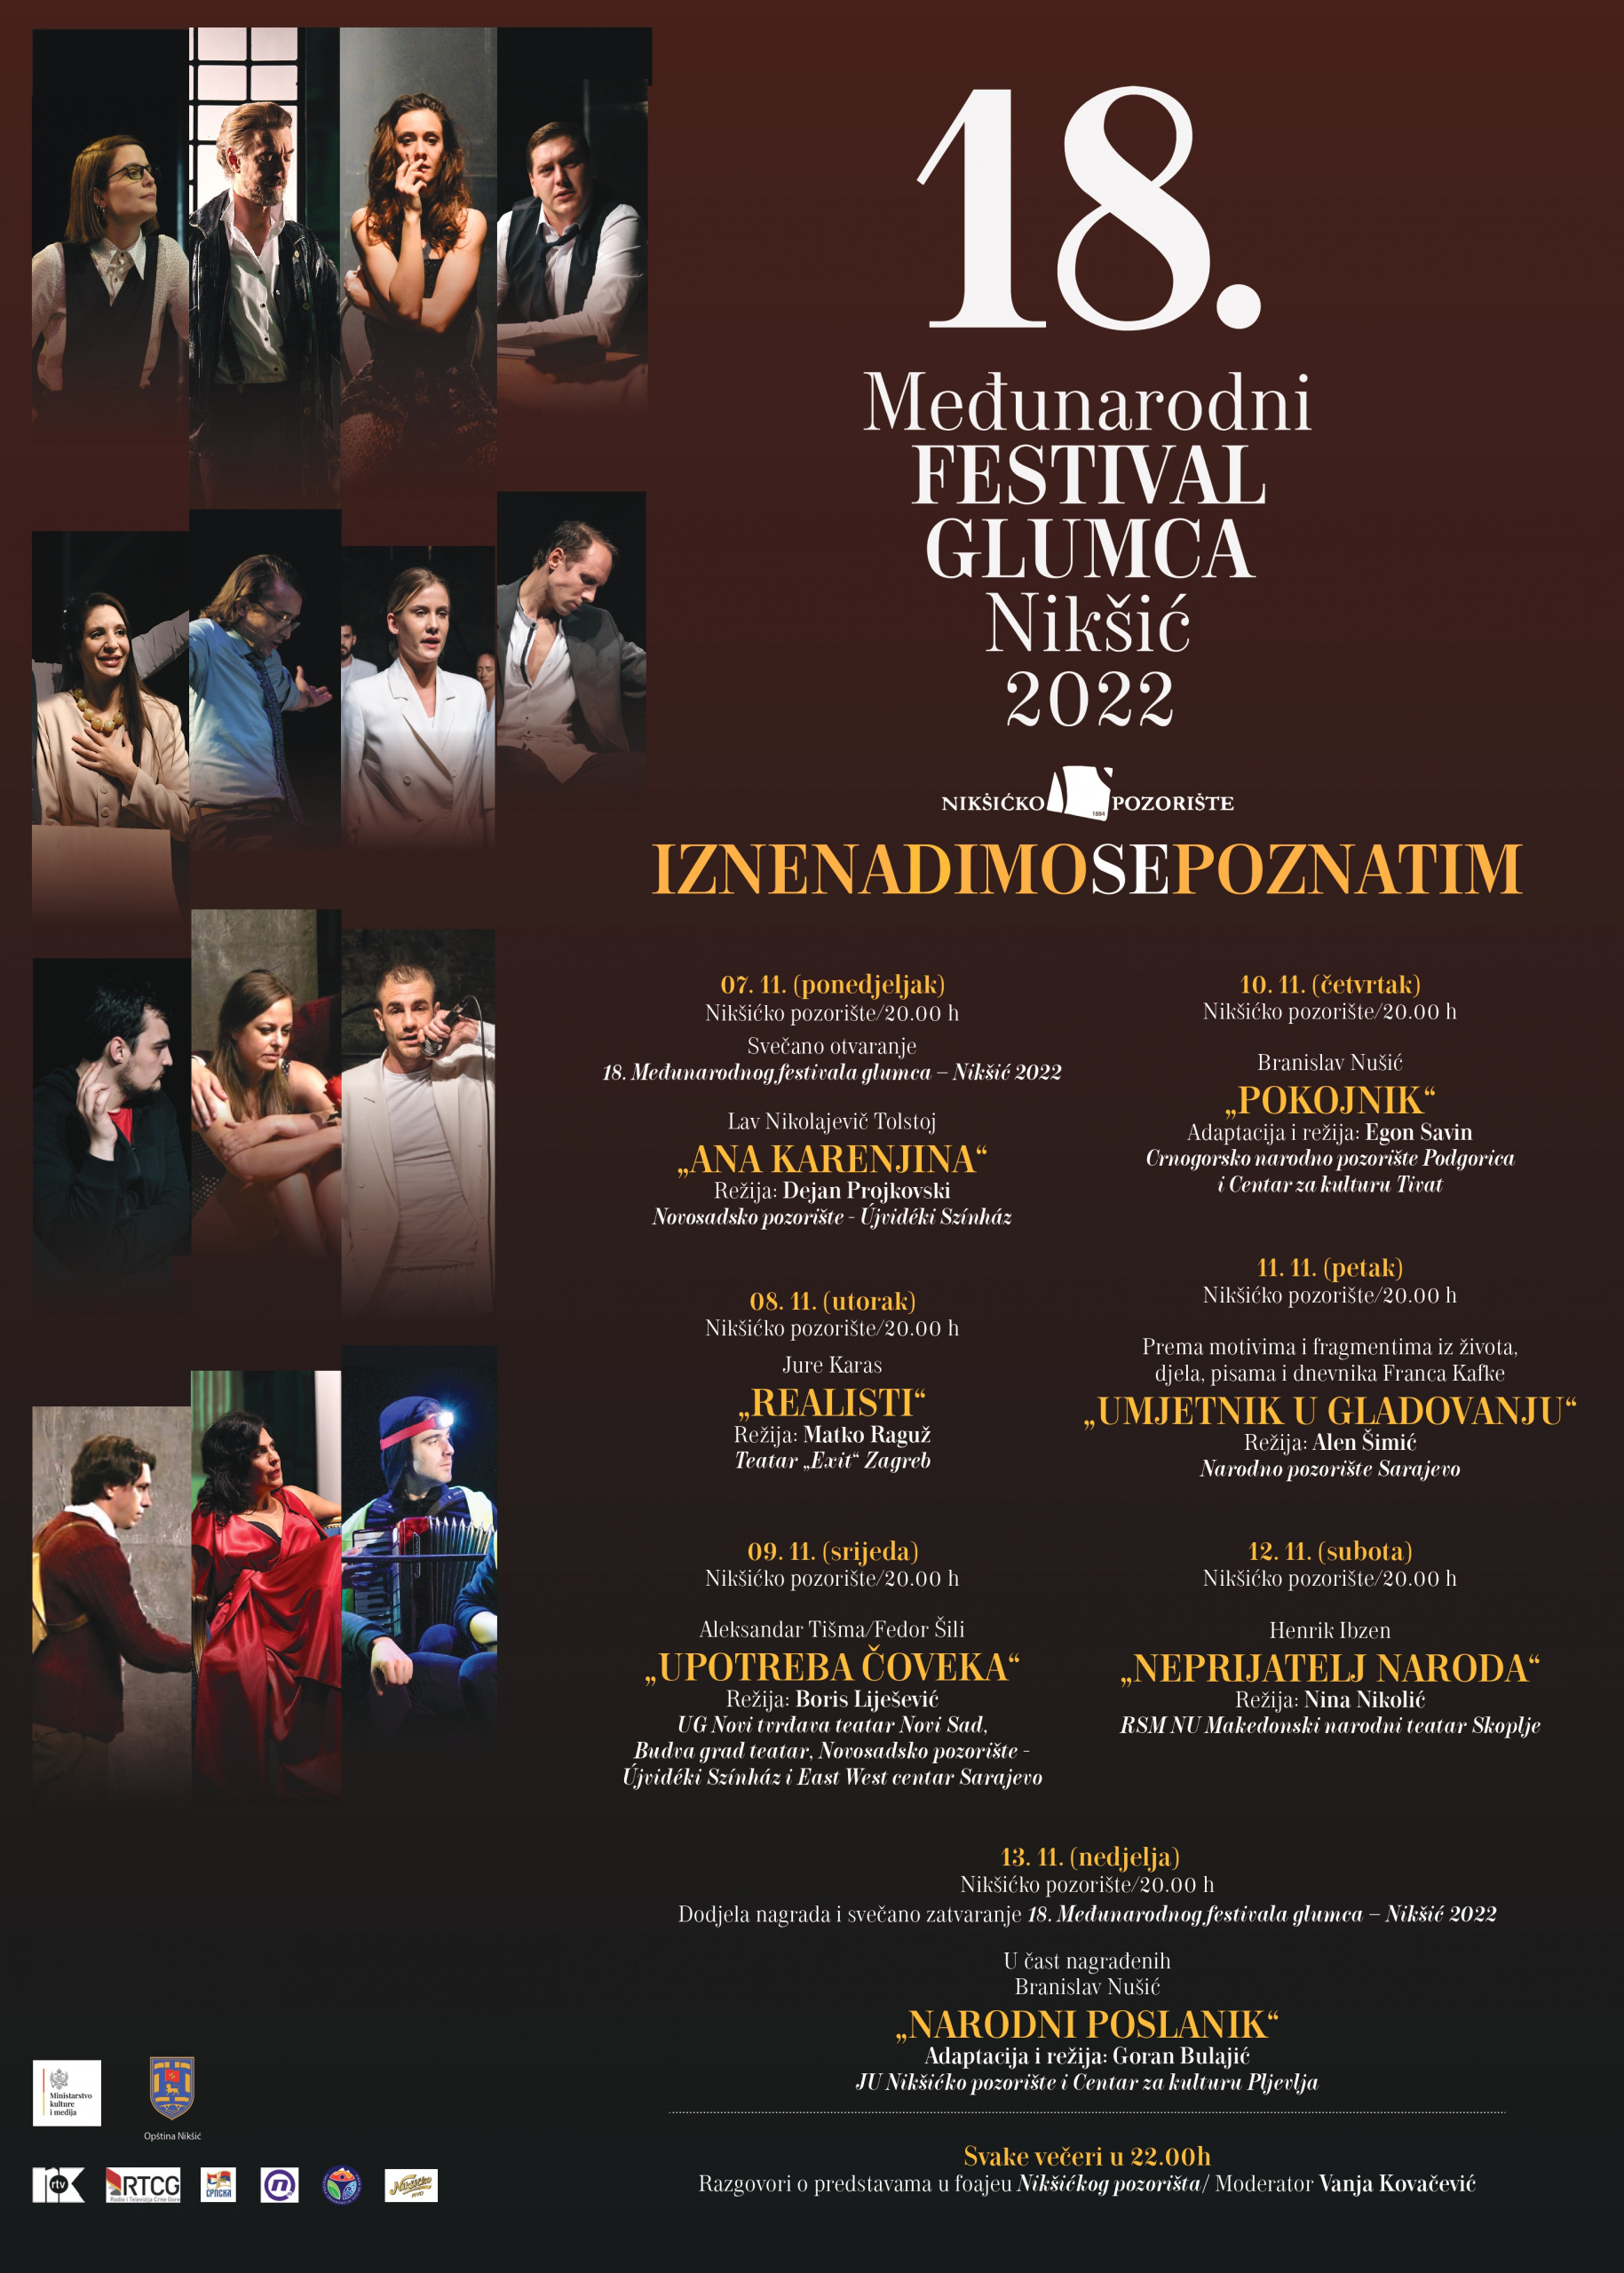 Međunarodni festival glumca Nikšić 2022 – u takmičarskom programu šest predstava i sedma u čast nagrađenih